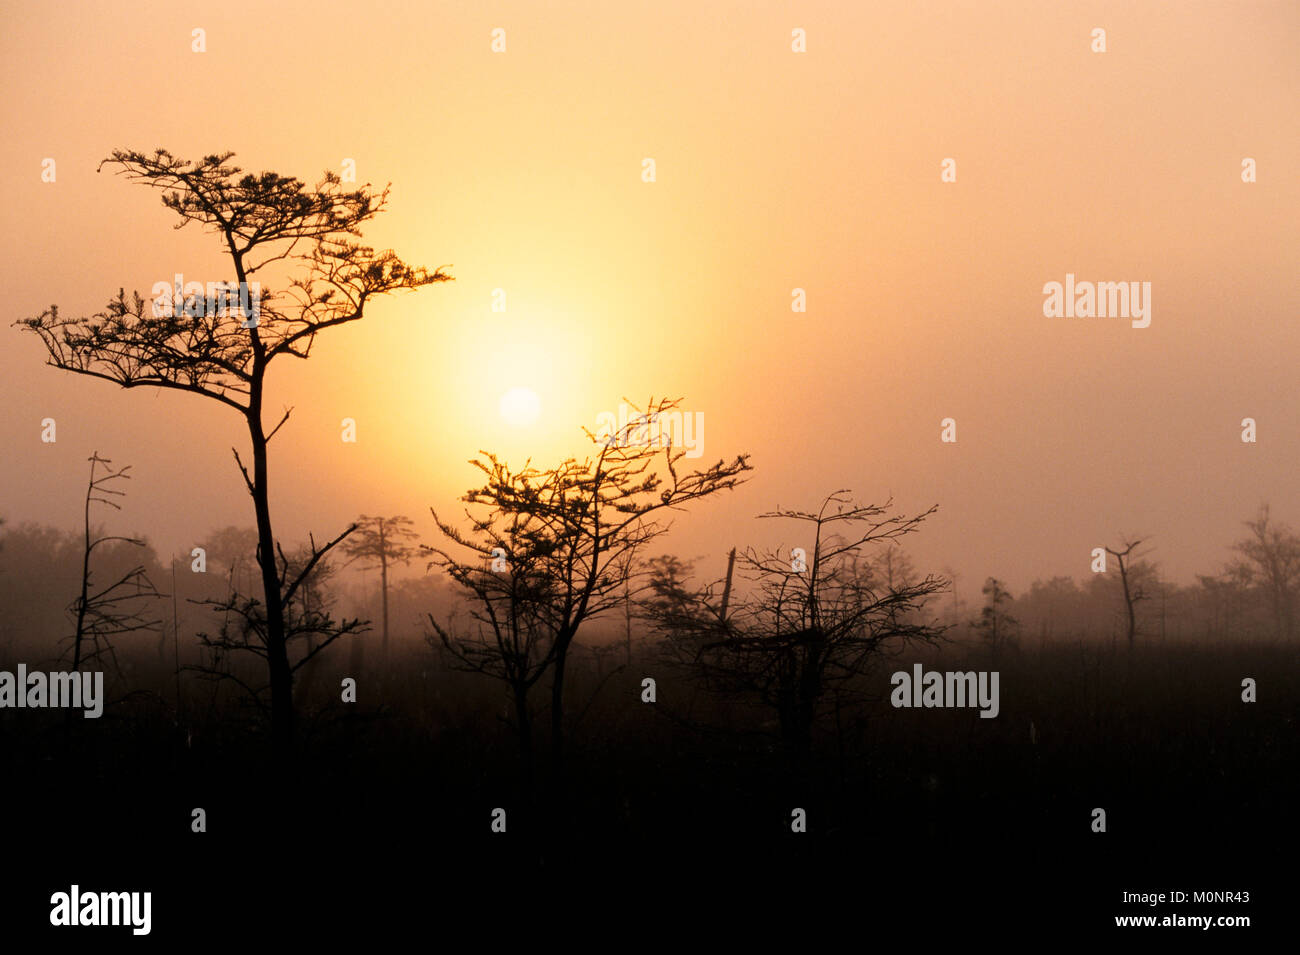 Le cyprès chauve dans le brouillard au lever du soleil, le parc national des Everglades, en Floride, USA / (Taxodium distichum) | Echte Sumpfzypressen im Nebel bei Sonnenaufgang Banque D'Images